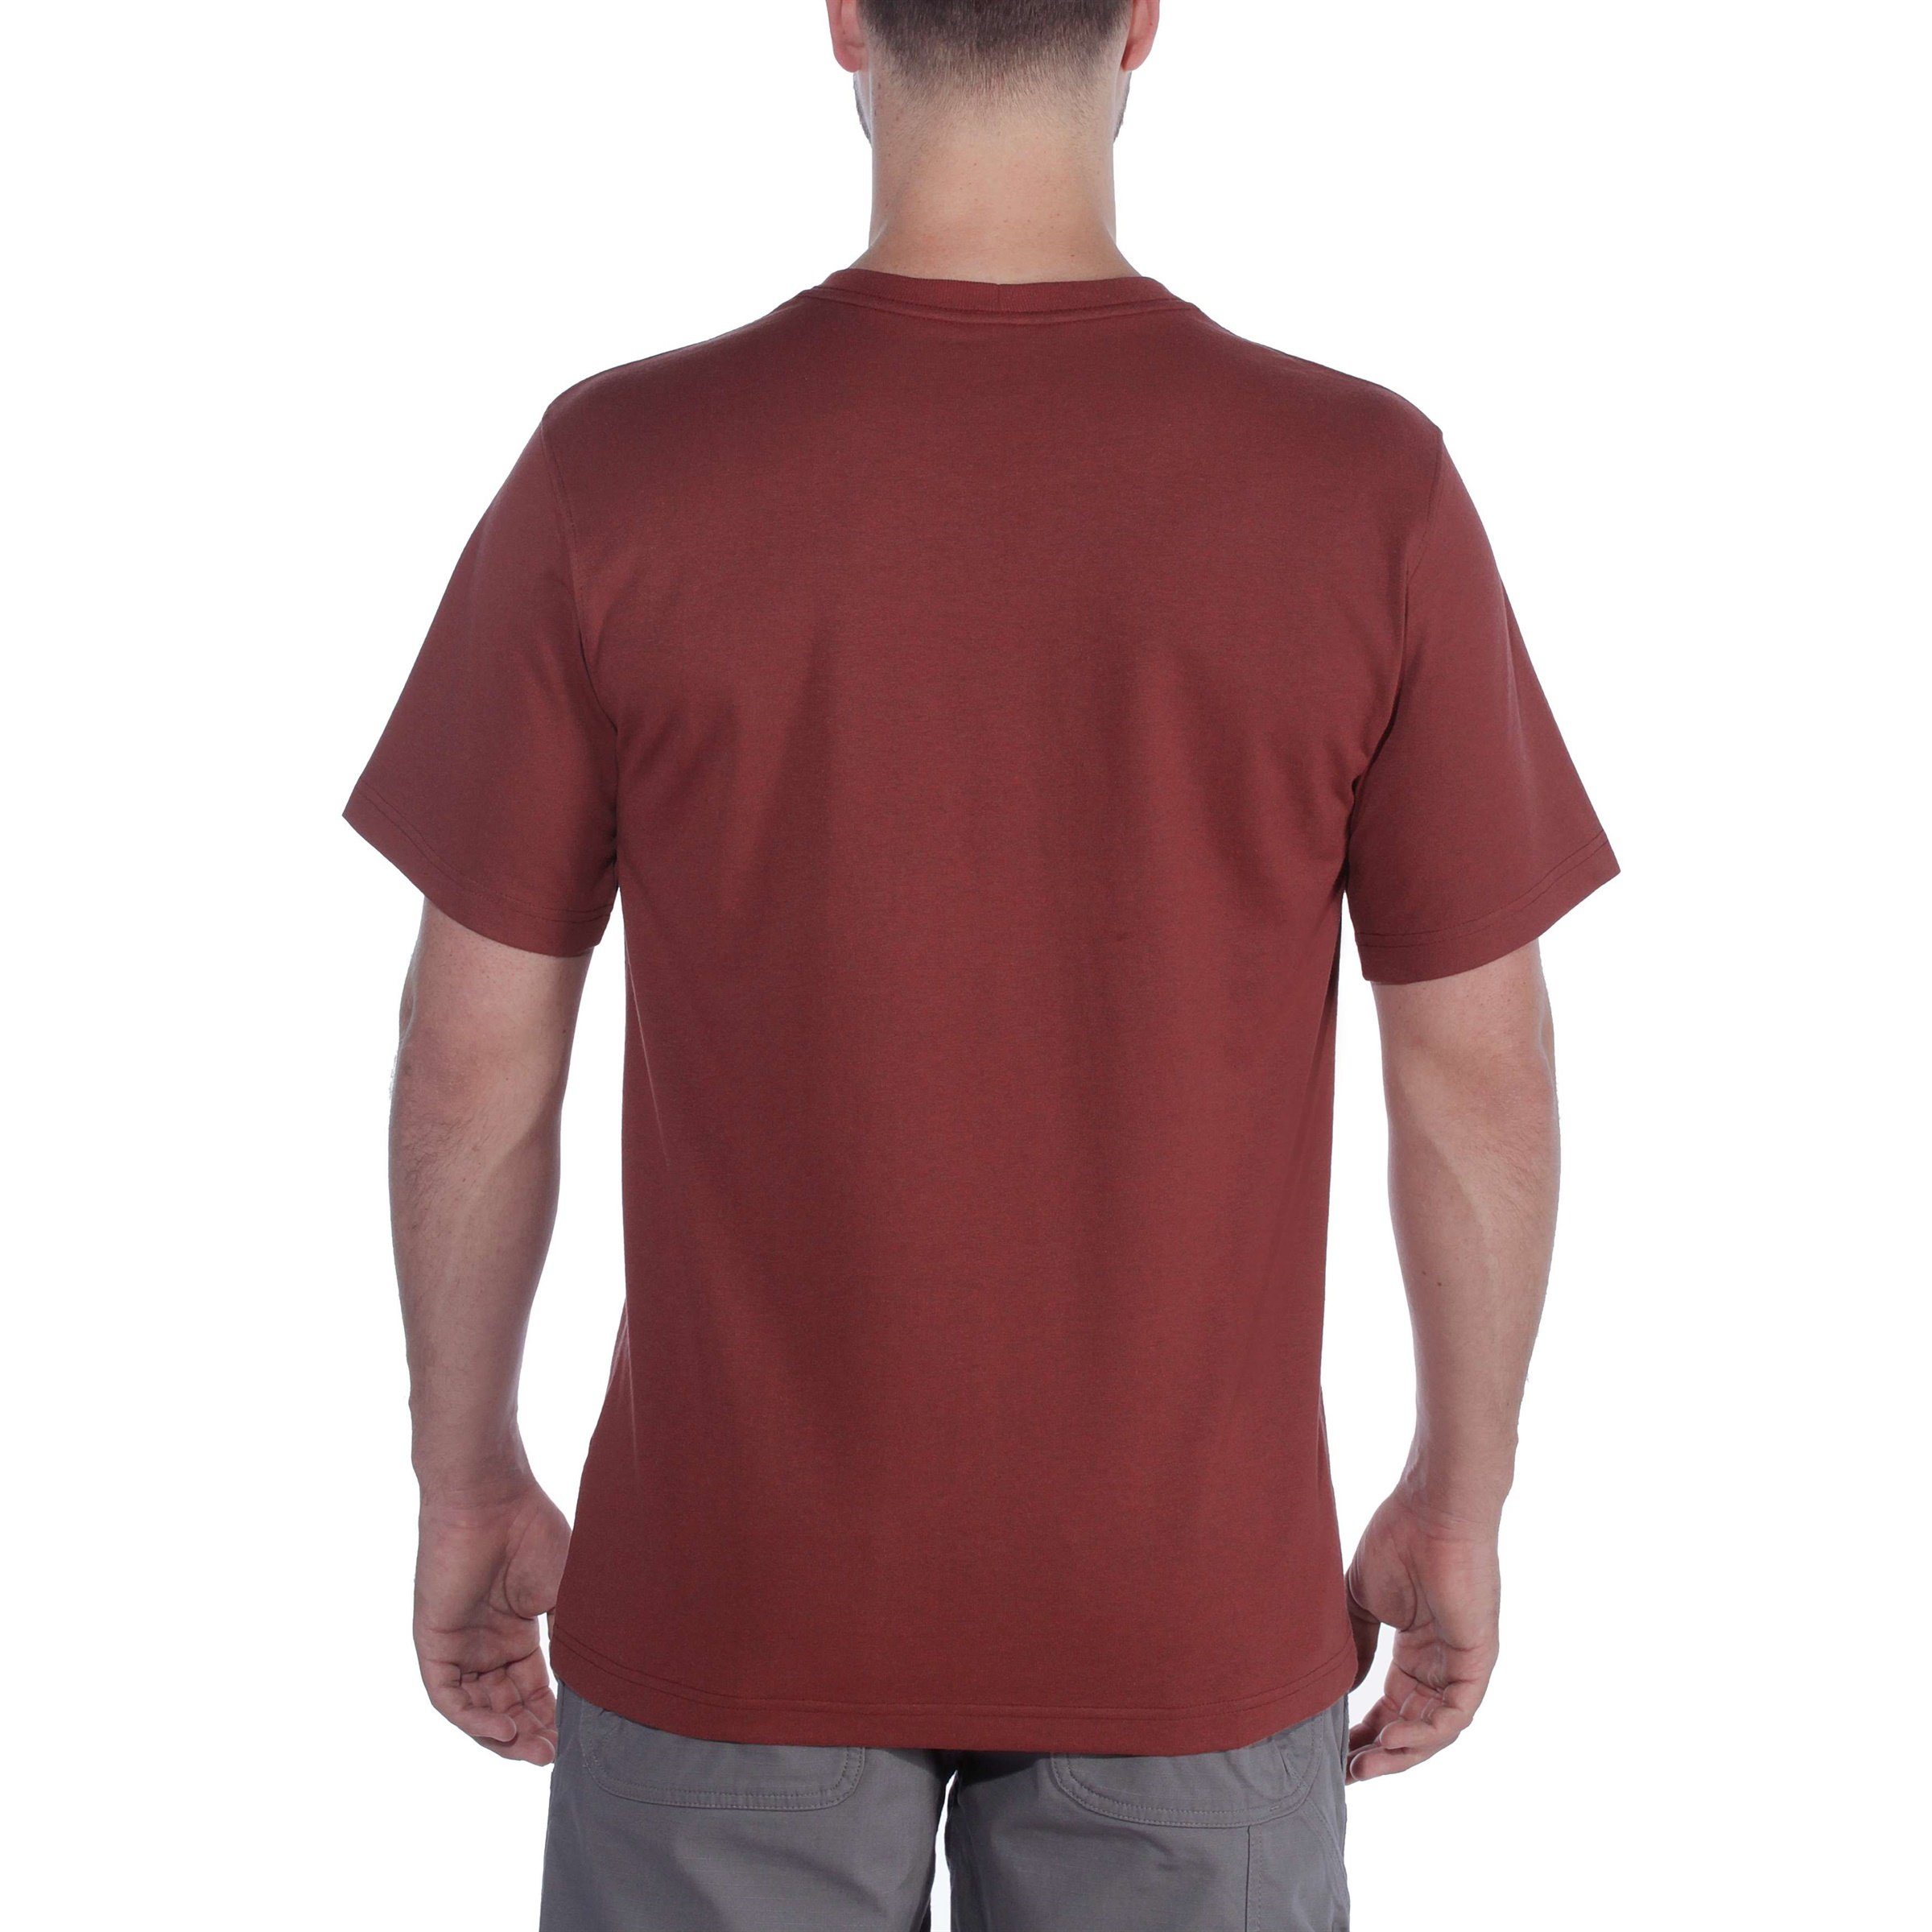 Fit Carhartt T-Shirt T-Shirt grey Short-Sleeve Carhartt Logo Herren Relaxed Heavyweight heather Adult Graphic